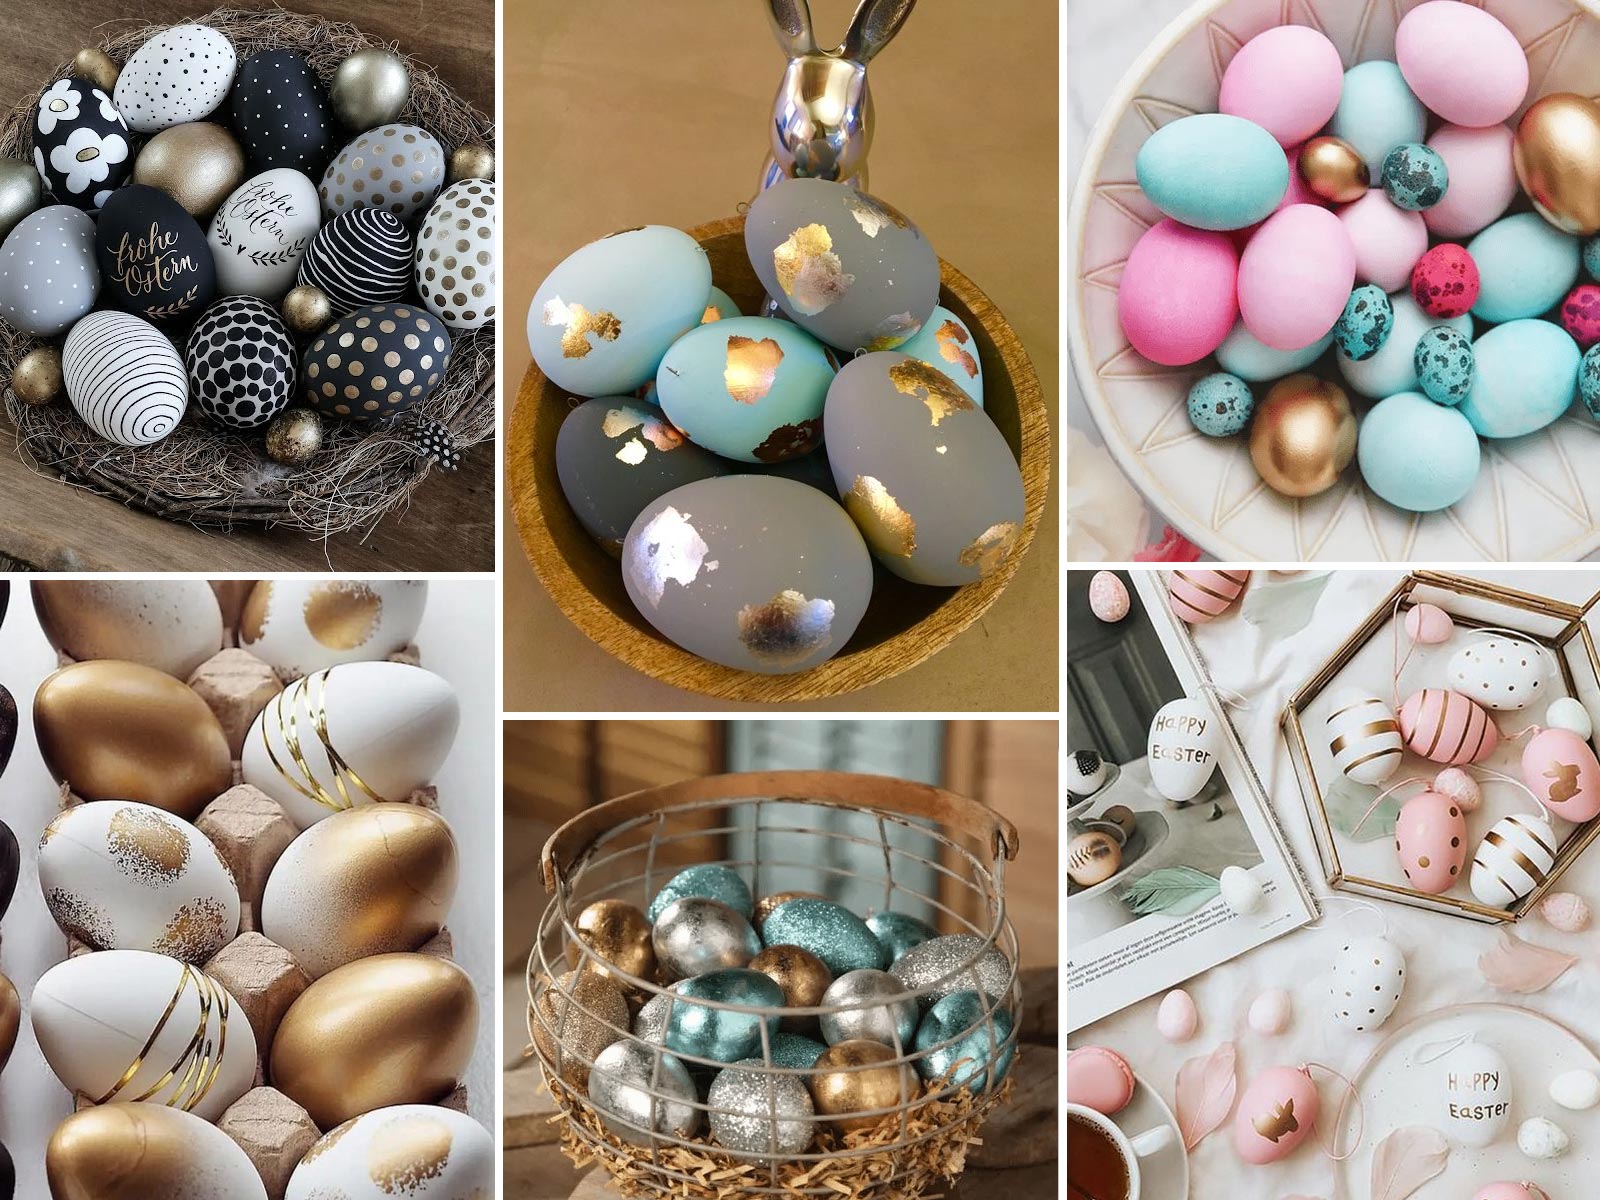 πασχαλινά αυγά,διακόσμηση πασχαλινών αυγών,πασχαλινή διακόσμηση,ιδέες πασχαλινής διακόσμησης,Πάσχα,γιορτές,